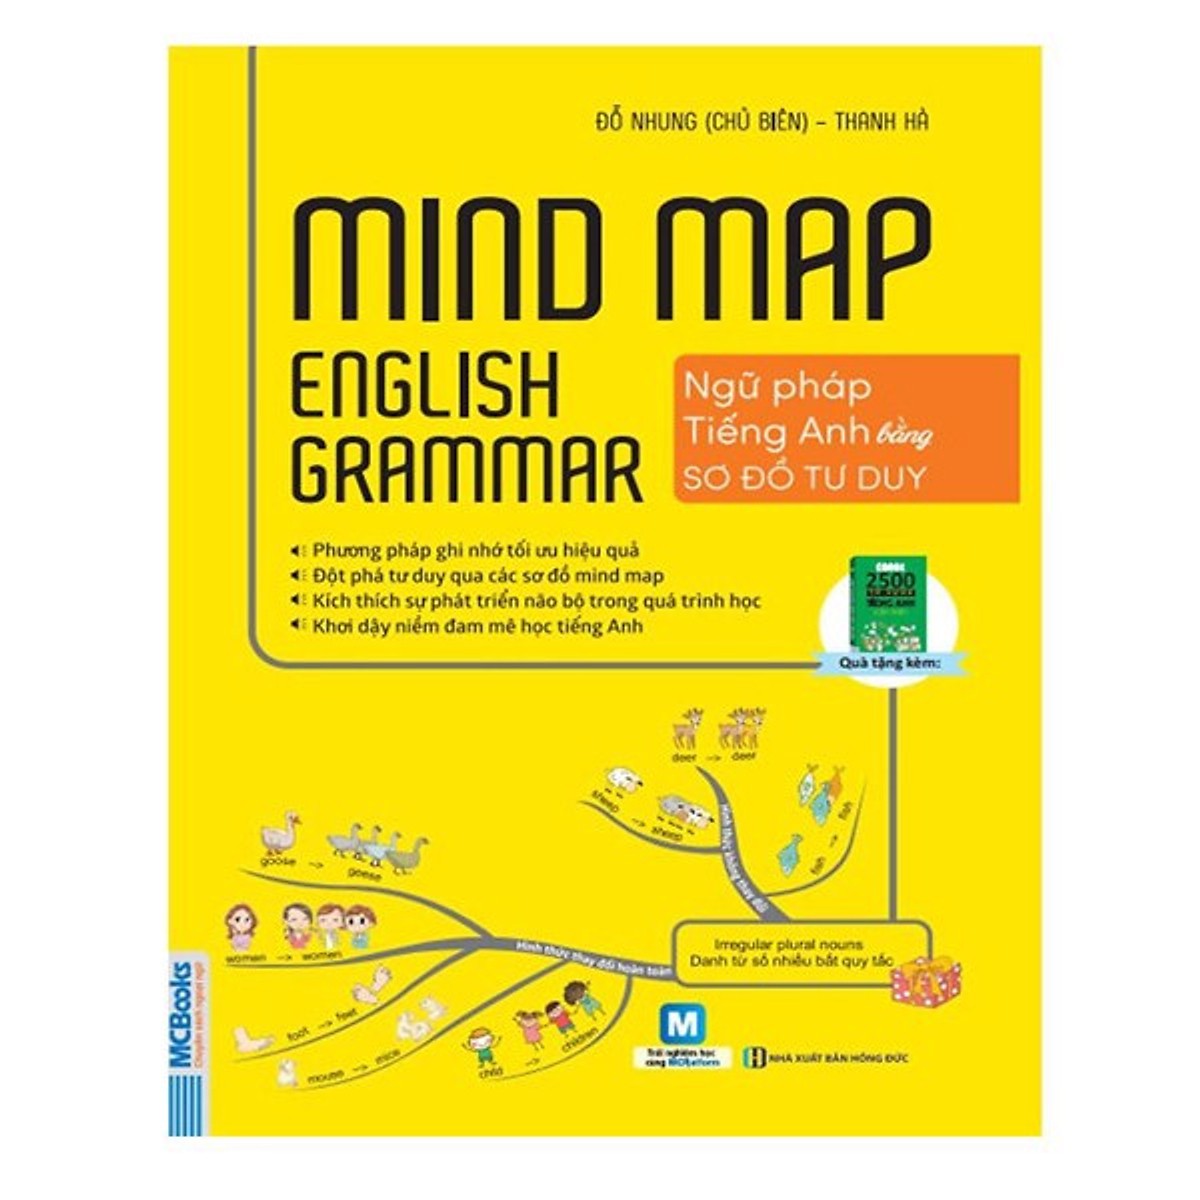 Mindmap English Grammar - Ngữ Pháp Tiếng Anh Bằng Sơ Đồ Tư Duy (Tặng kèm Bookmark PL)